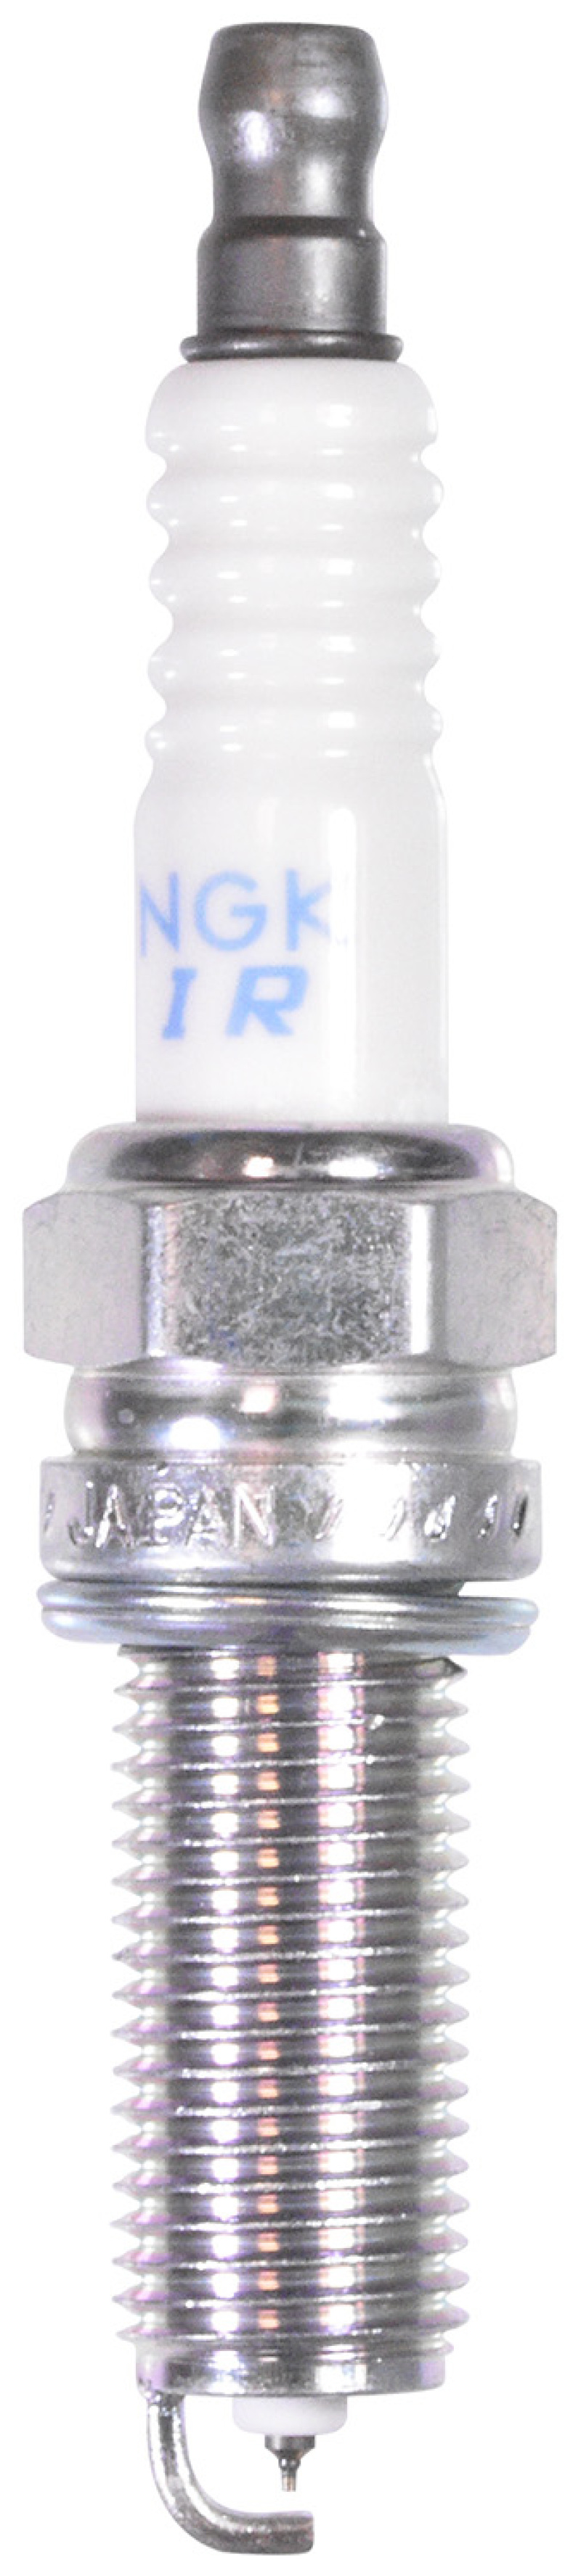 NGK Laser Iridium Spark Plug Box of 4 (ILKR8Q7) - 93819